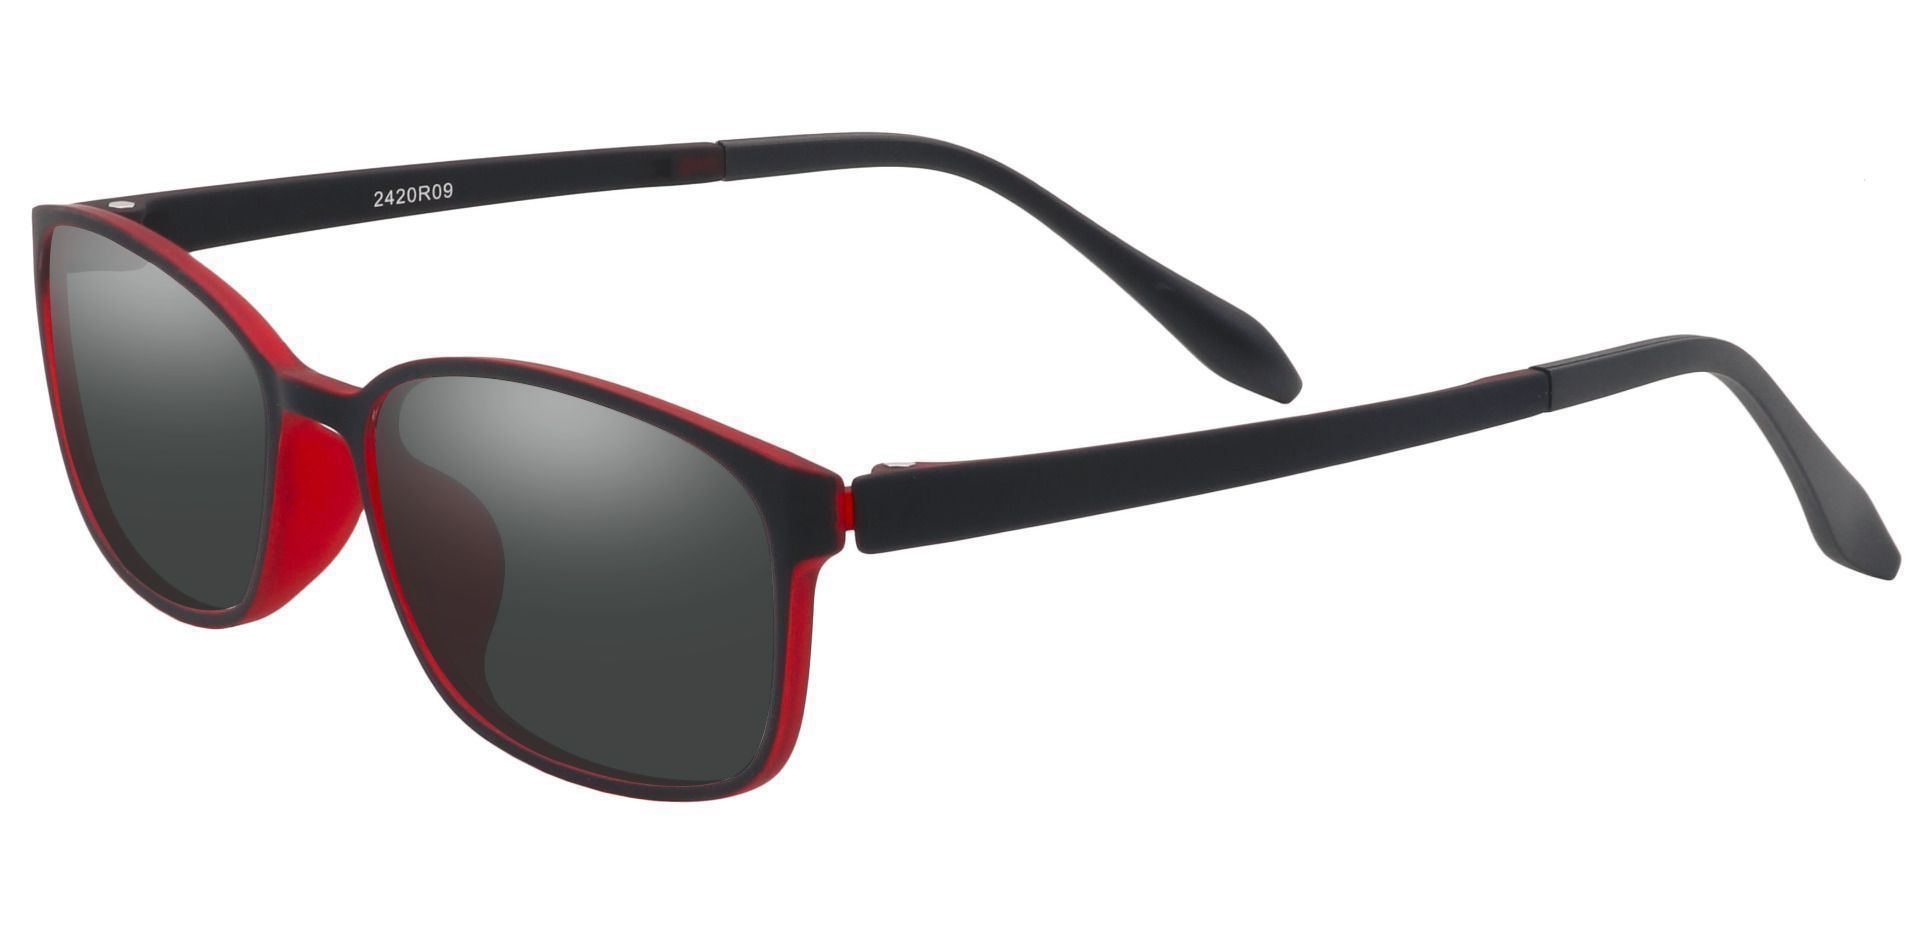 Merlot Rectangle Progressive Sunglasses - Red Frame With Gray Lenses